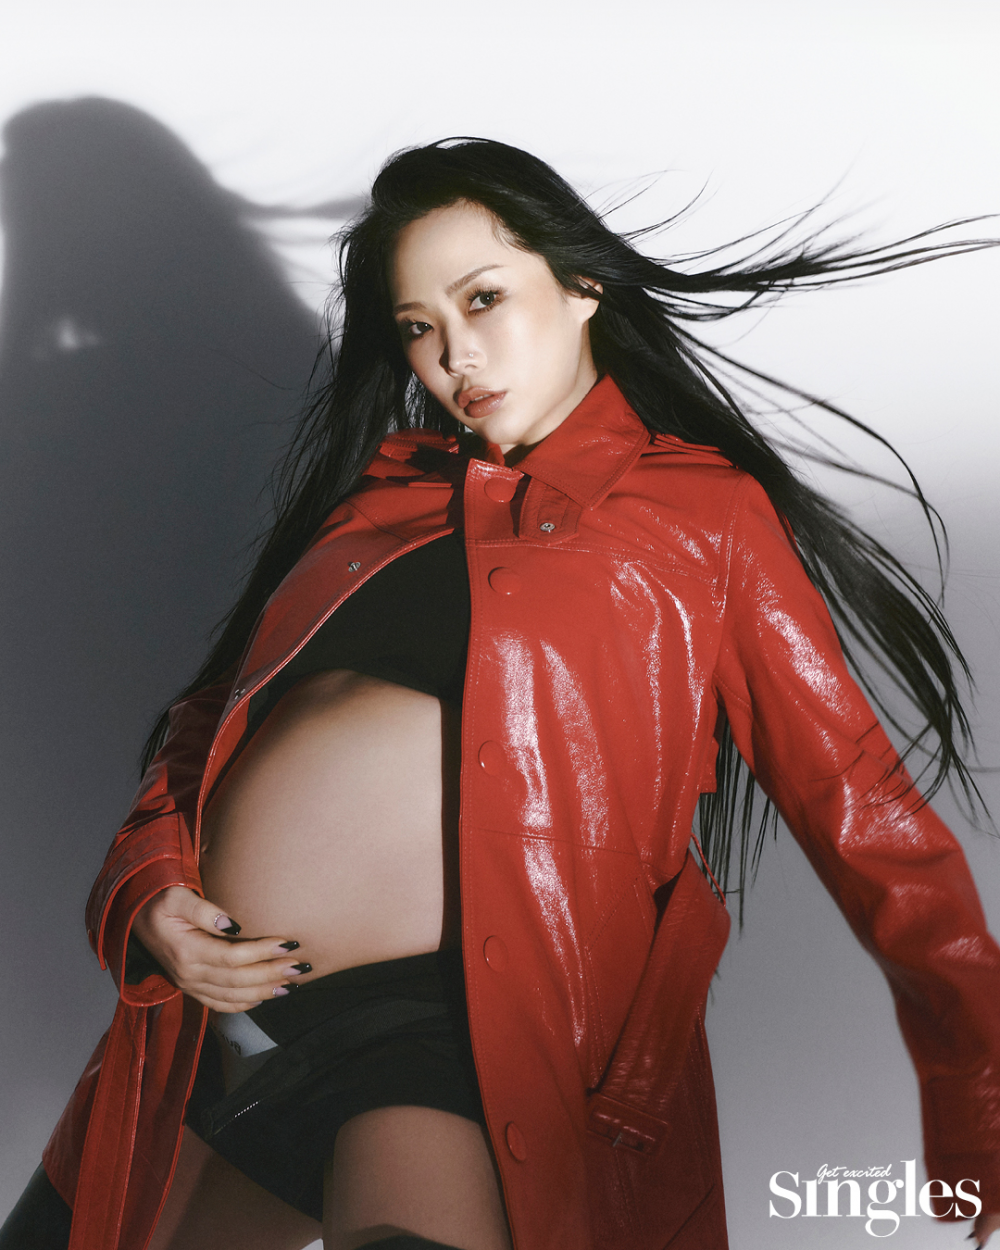 Фотосессия беременной Honey J для мартовского выпуска журнала Singles